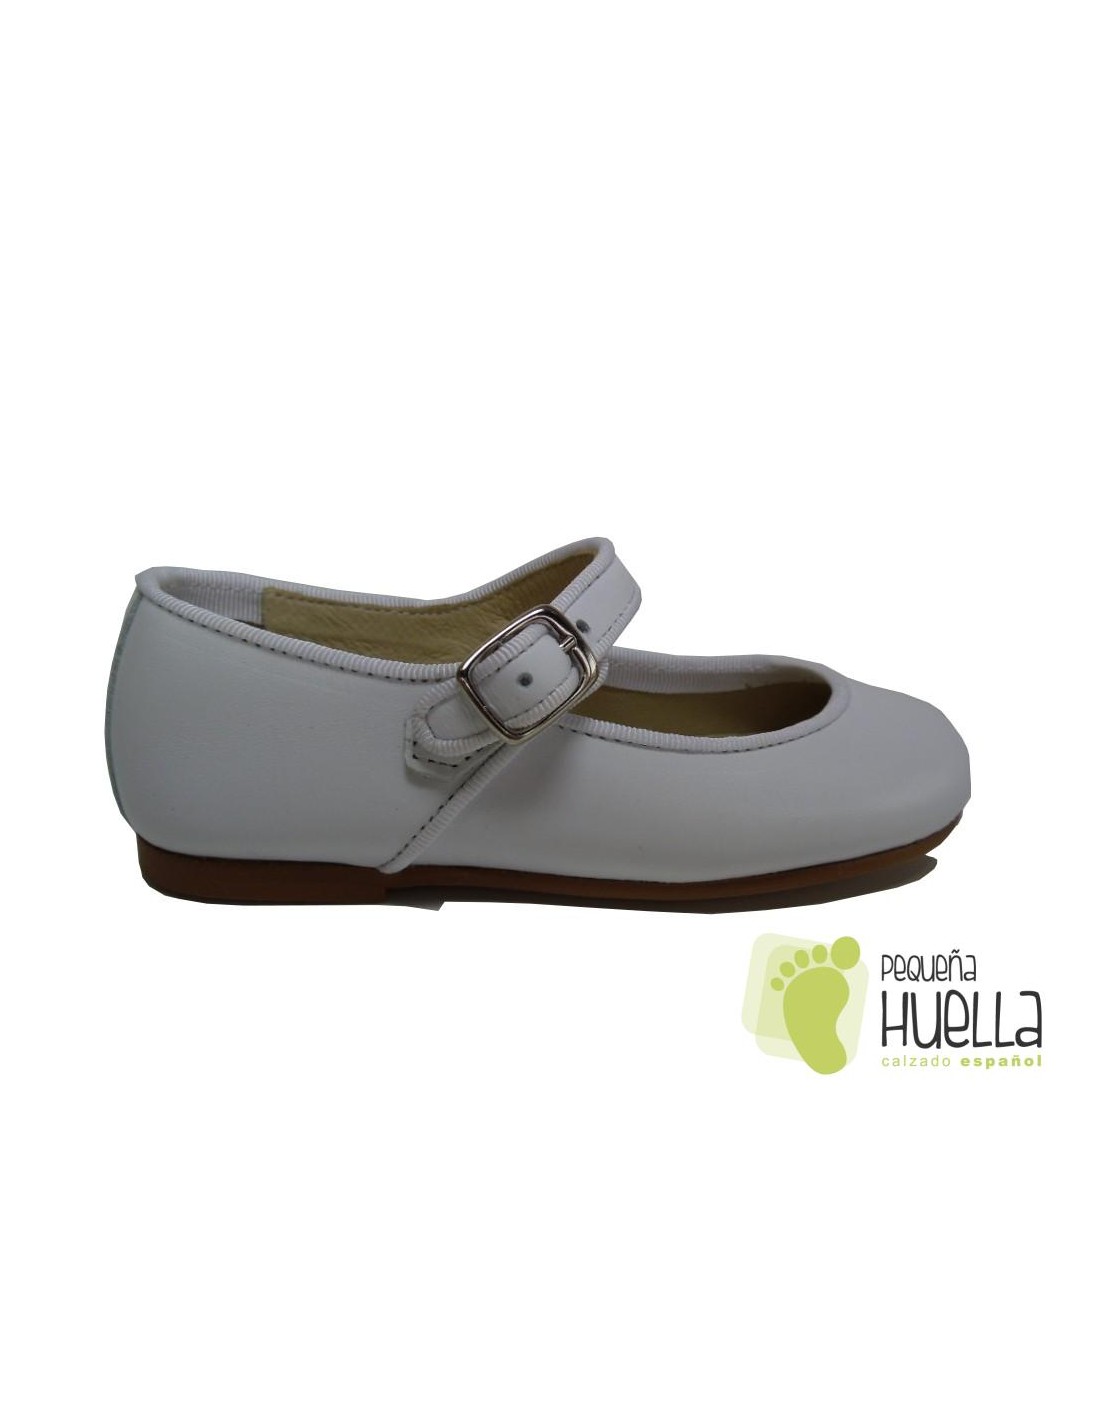 Zapatos Merceditas blancas de comunión para niñas baratas en Madrid